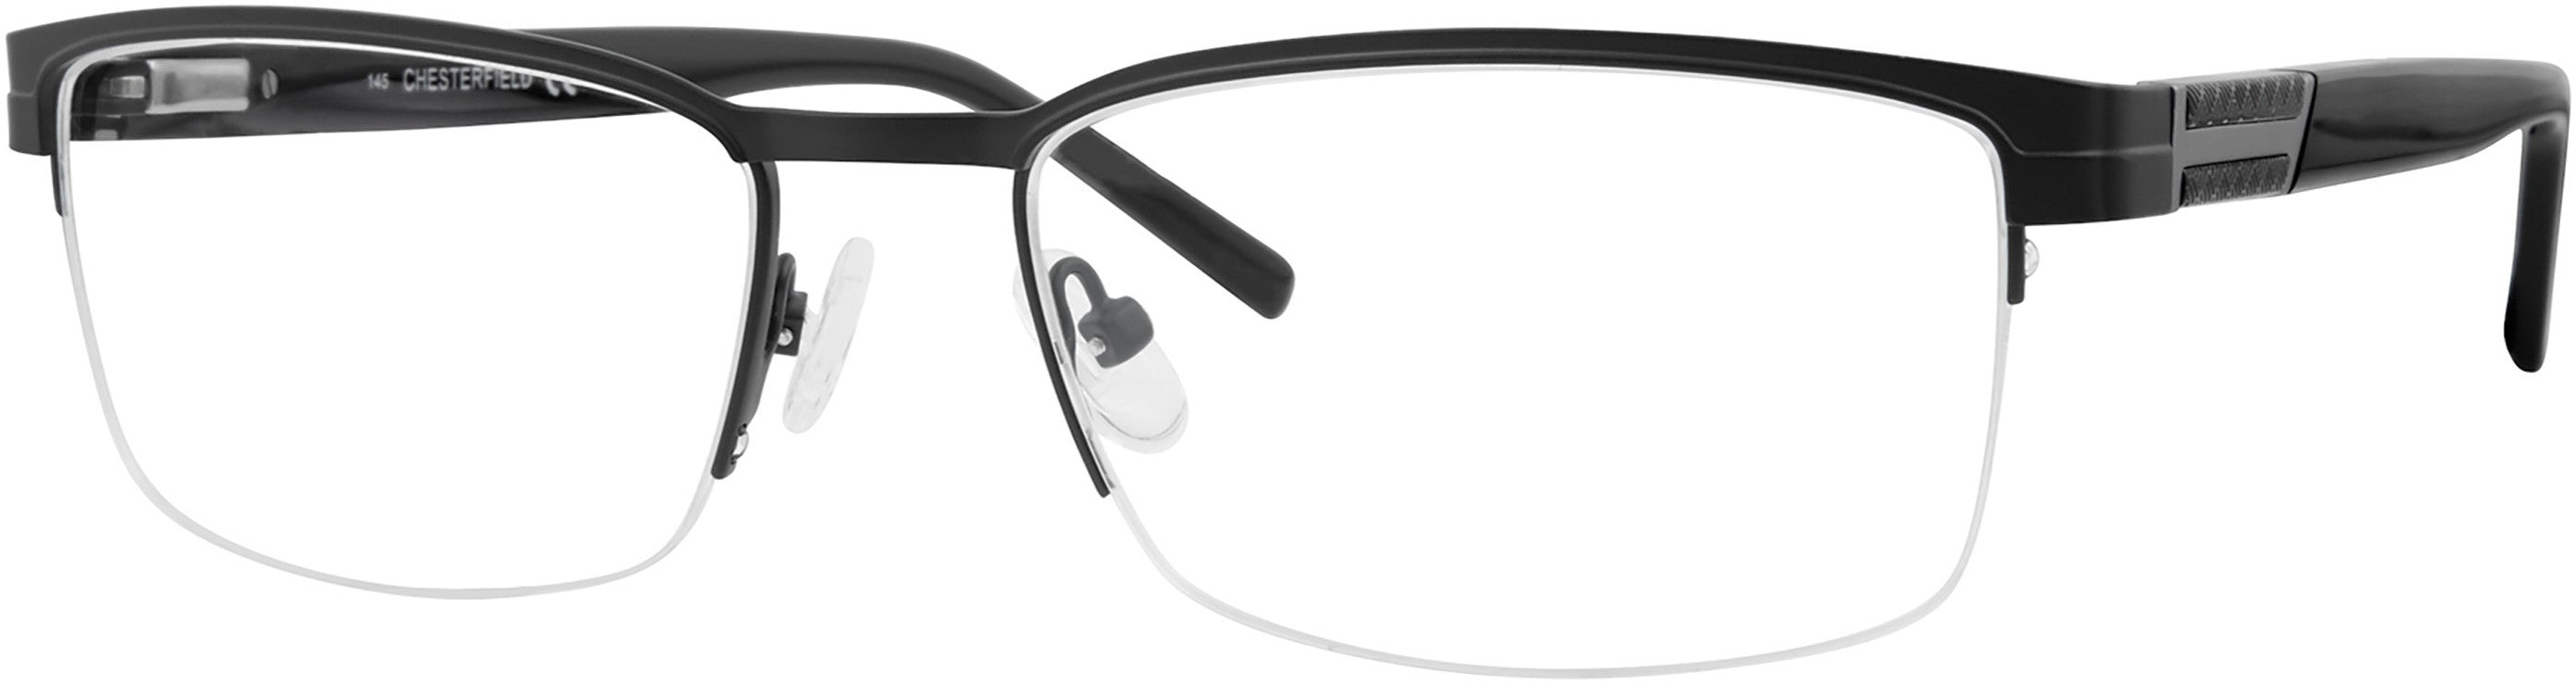  Chesterfield 65XL Rectangular Eyeglasses 0003-0003  Matte Black (00 Demo Lens)